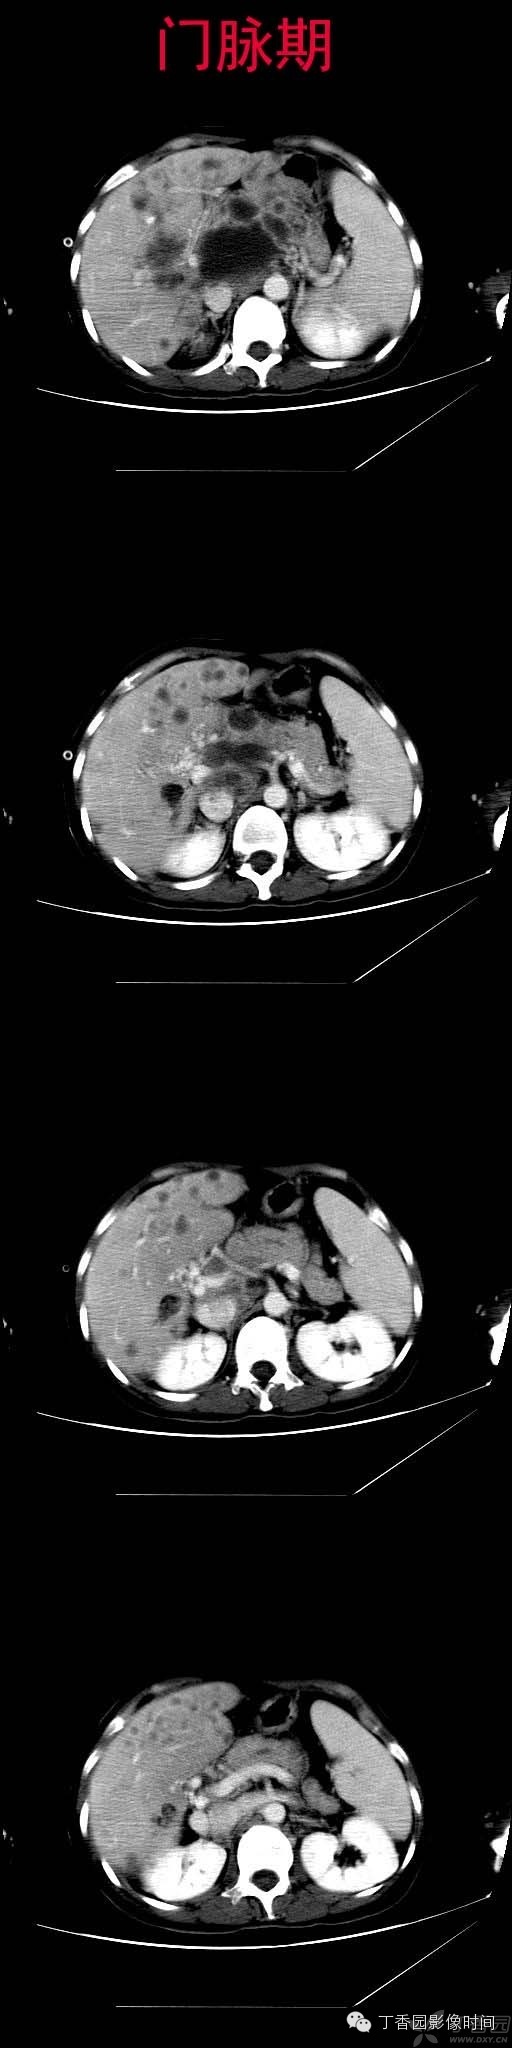 门静脉海绵样变的CT和MR表现